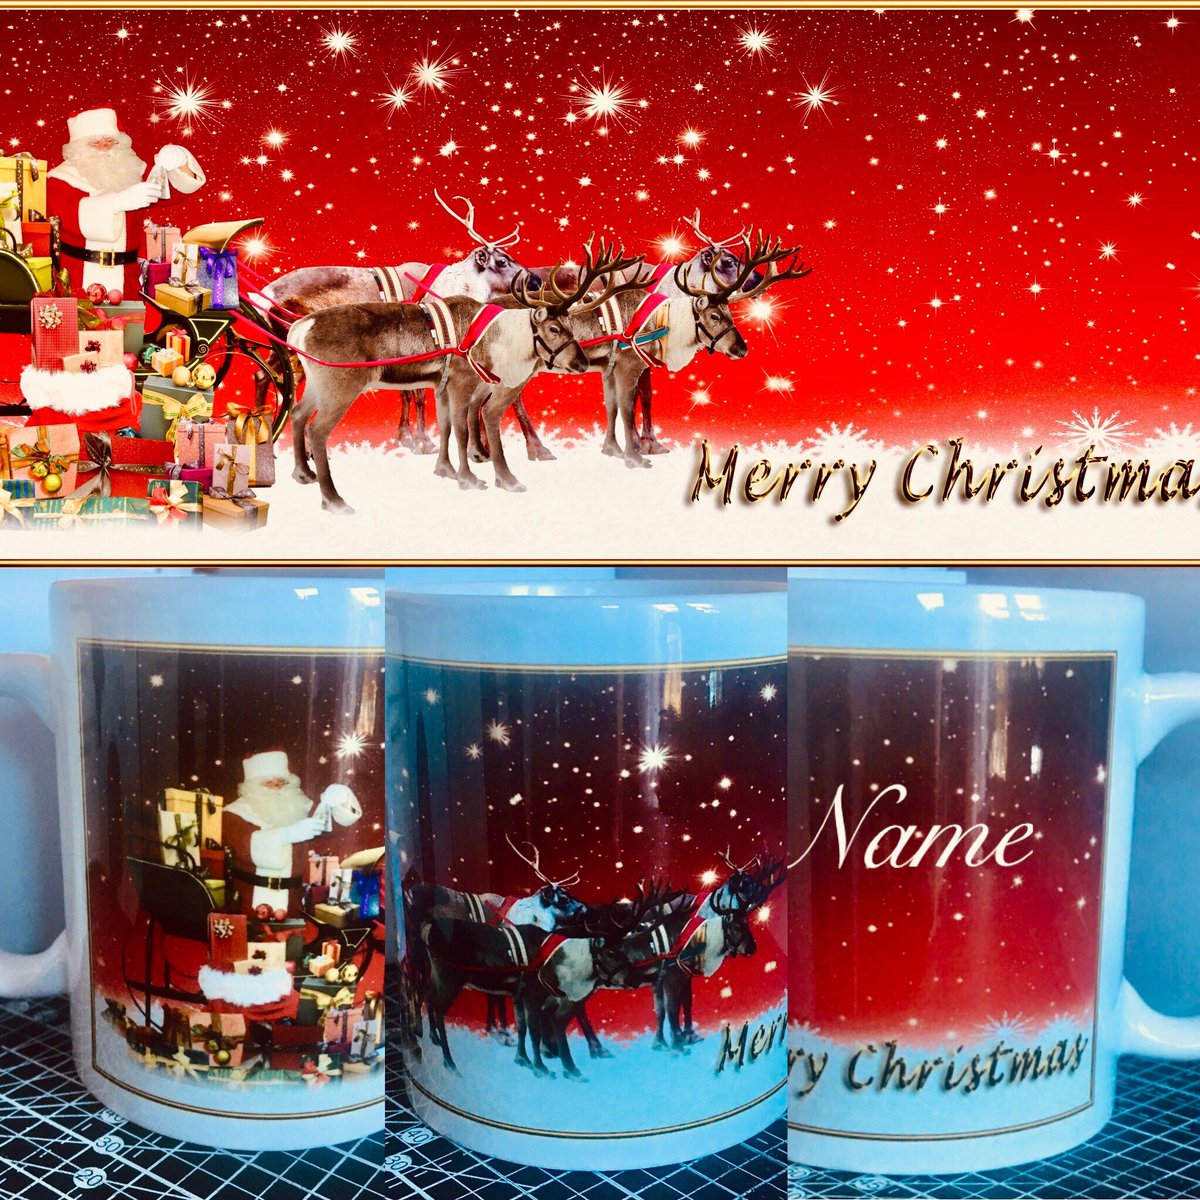 Excited to share the latest addition to my #etsy shop: Christmas Mug - Personalised Gift
 #xmascupcustom
#customisedmug
#fatherchristmasmug
#festivemug
#ceramicxmasmug
#seasonalgift
#christmasmug
#santaandreigndeer
#personalisedmug
#customxmasmug
#xmassantamug
#mugpresent
#mug